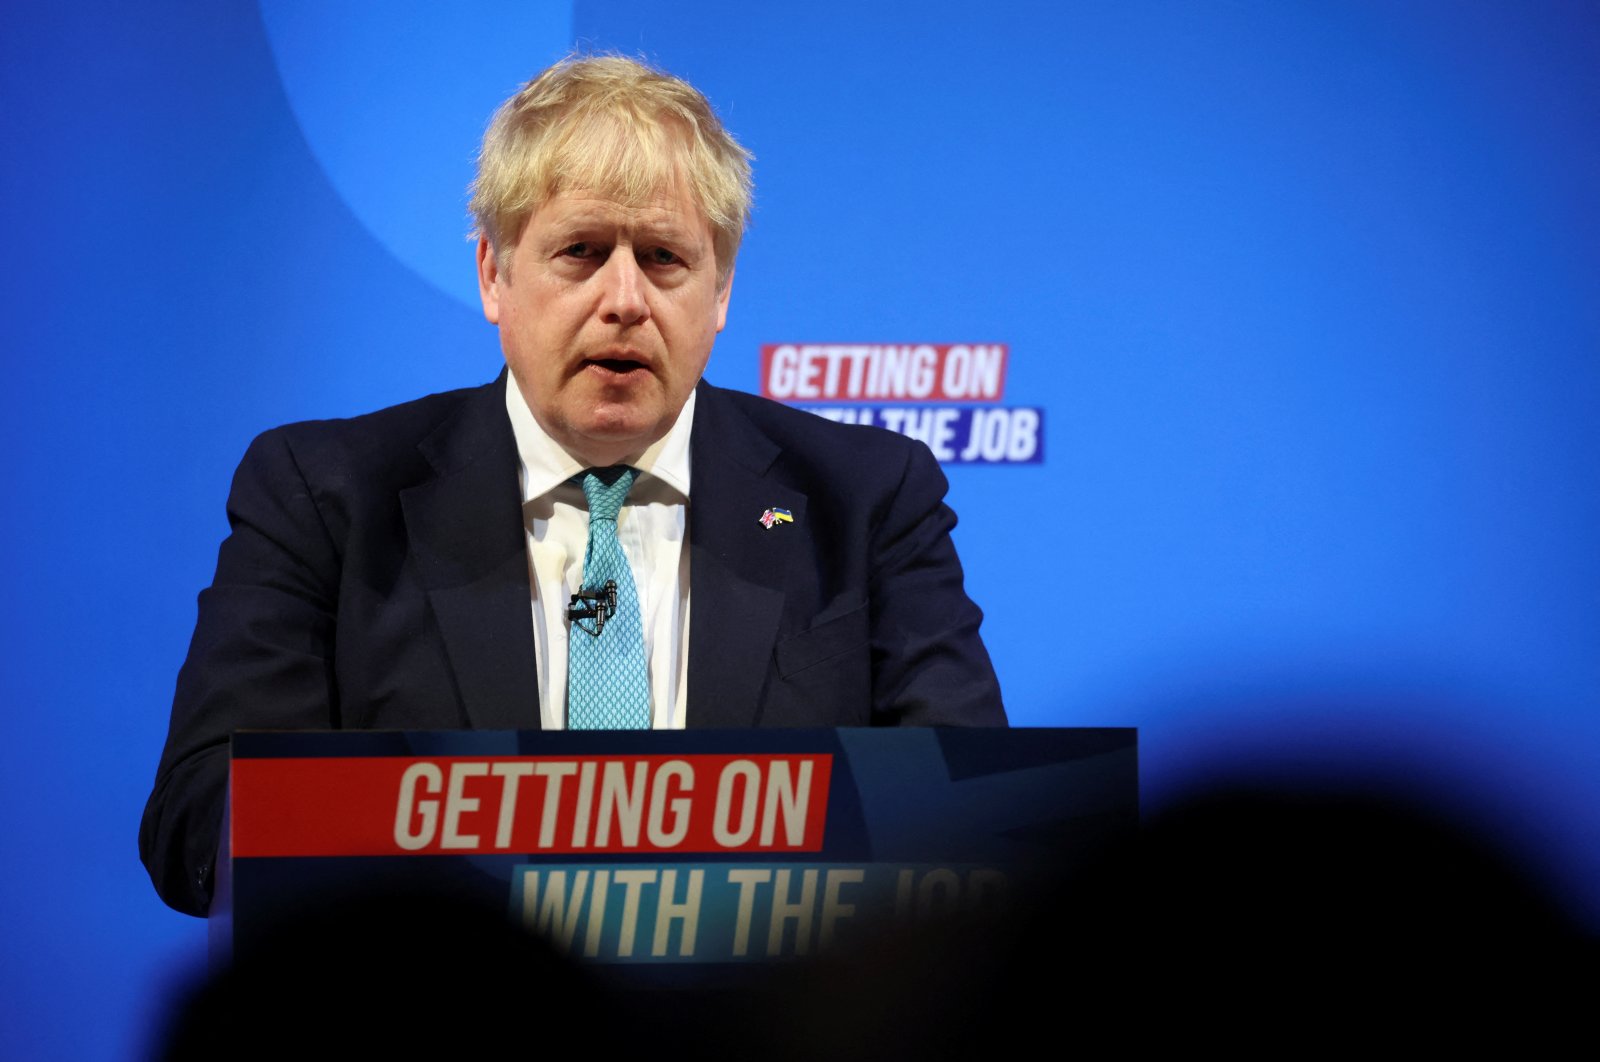 Kemenangan Rusia akan membawa ‘zaman intimidasi,’ kata Johnson dari Inggris